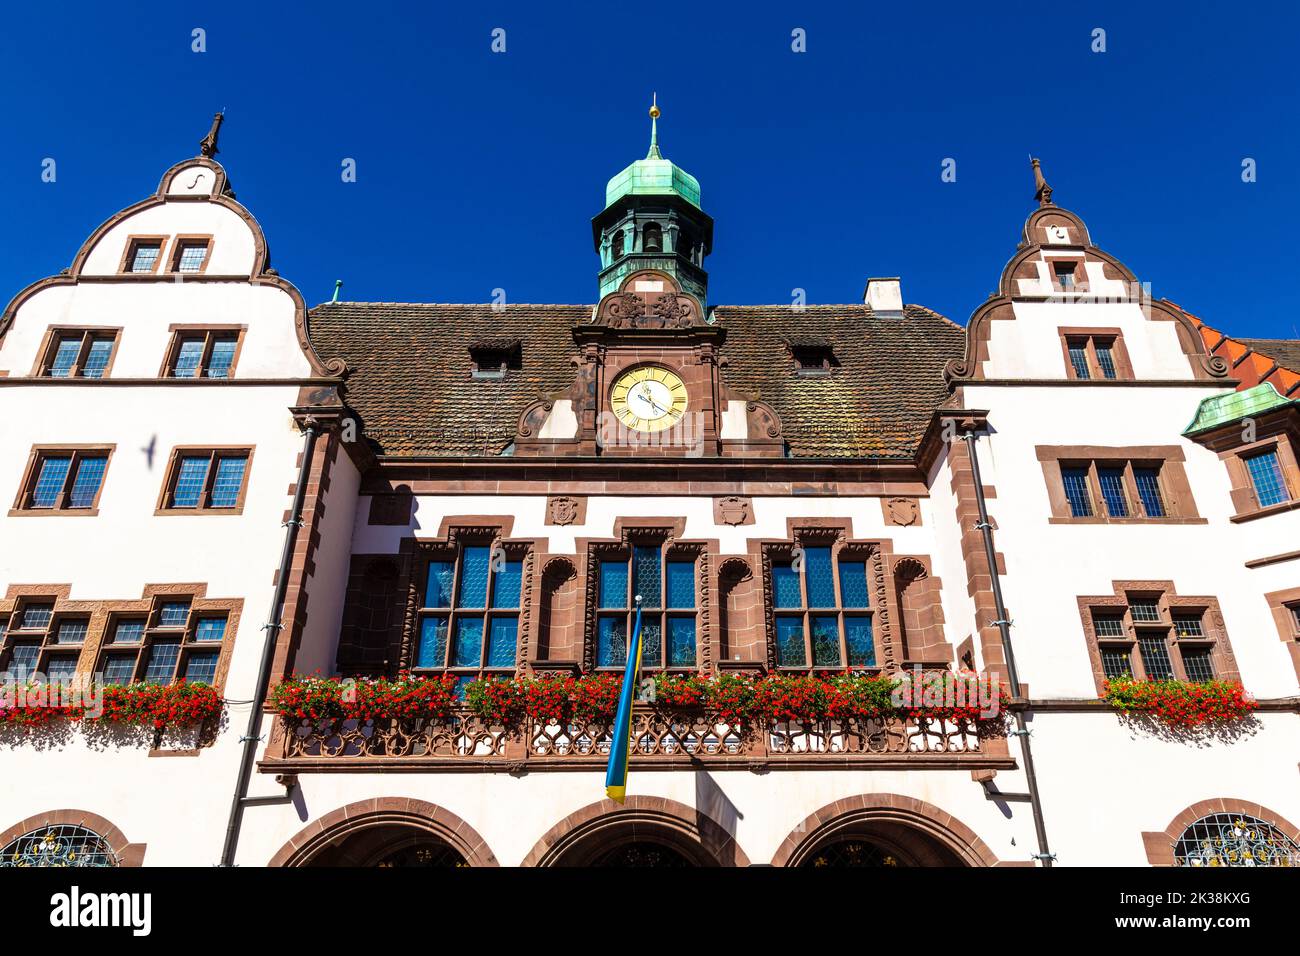 Extérieur de la nouvelle mairie du 16th siècle (Neues Rathaus), Rathausplatz, Freiburg im Breisgau, Allemagne Banque D'Images